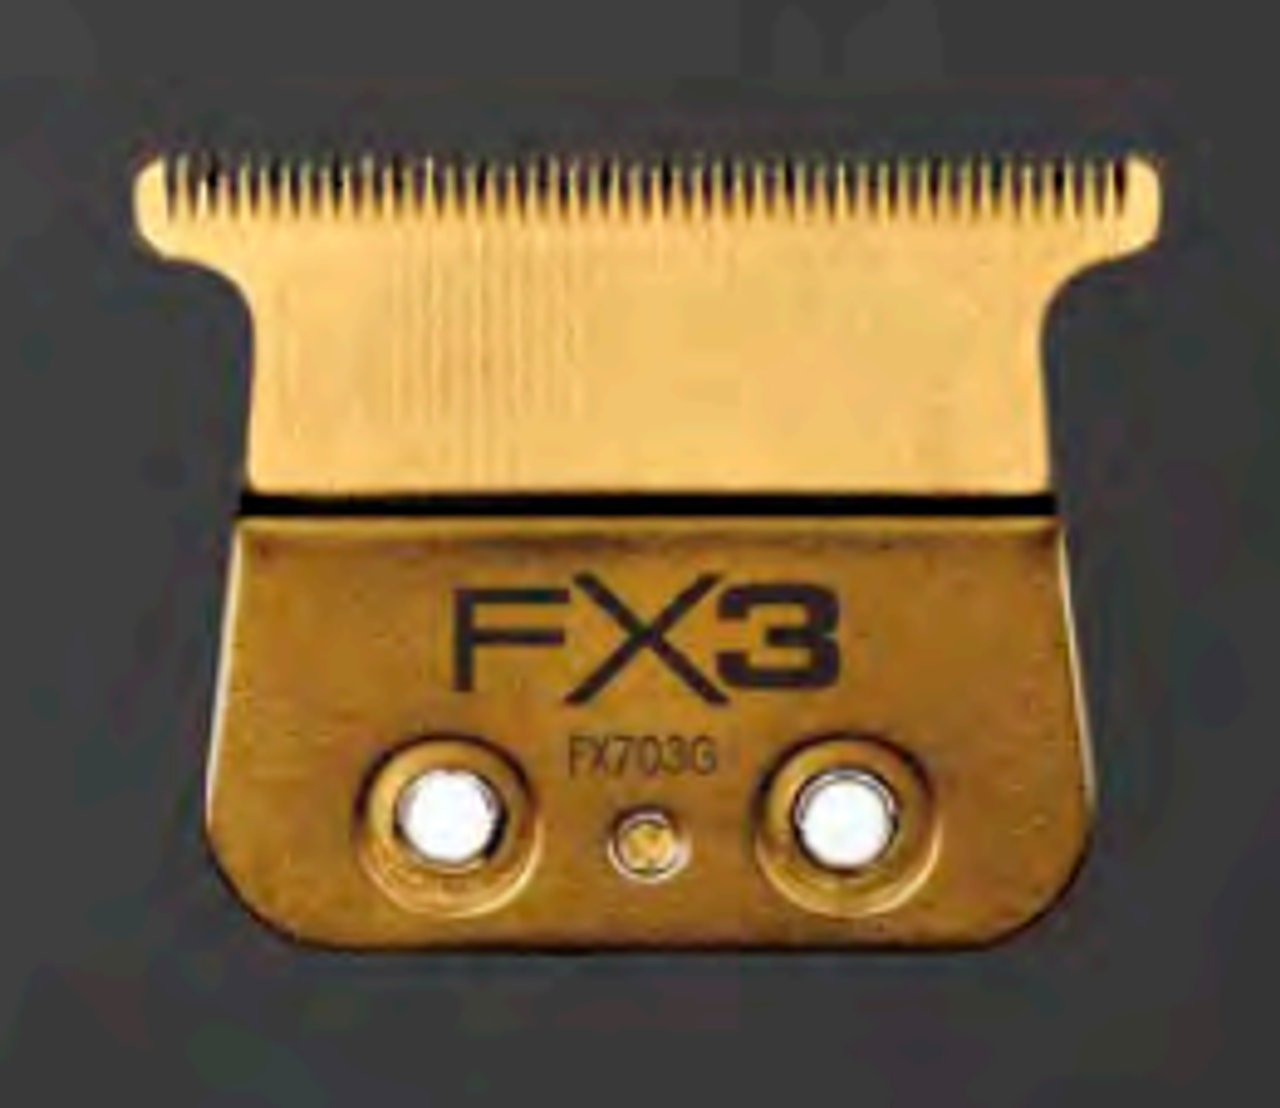 Babyliss FX3 trimmer 2.0 X Fx Blade Saddle